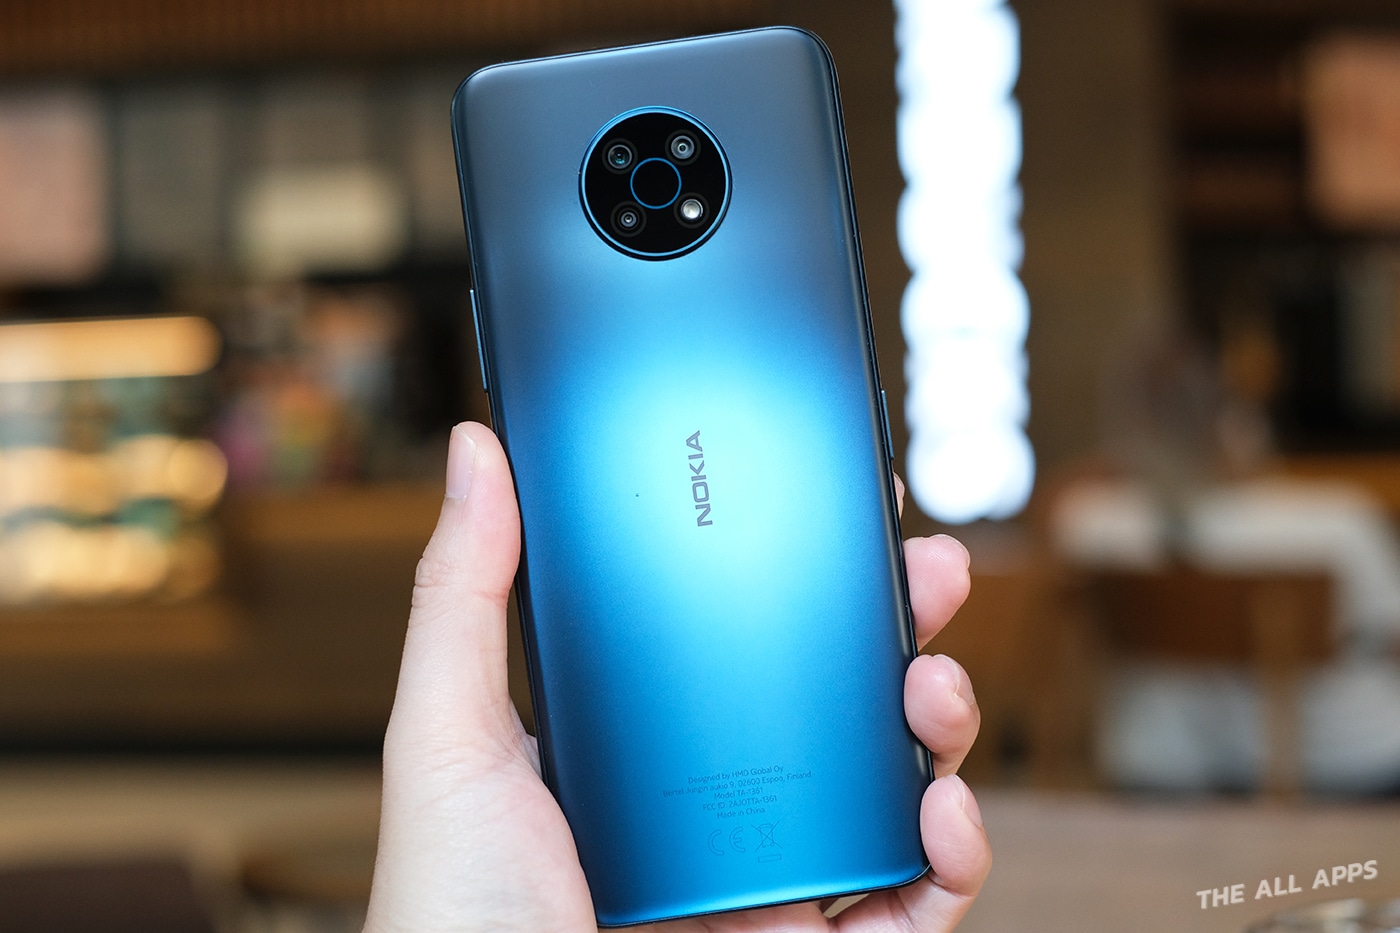 รีวิว Nokia G50 สมาร์ทโฟน 5G หน้าจอใหญ่ ดีไซน์สวย การันตีอัปเกรด Android นาน 2 ปี